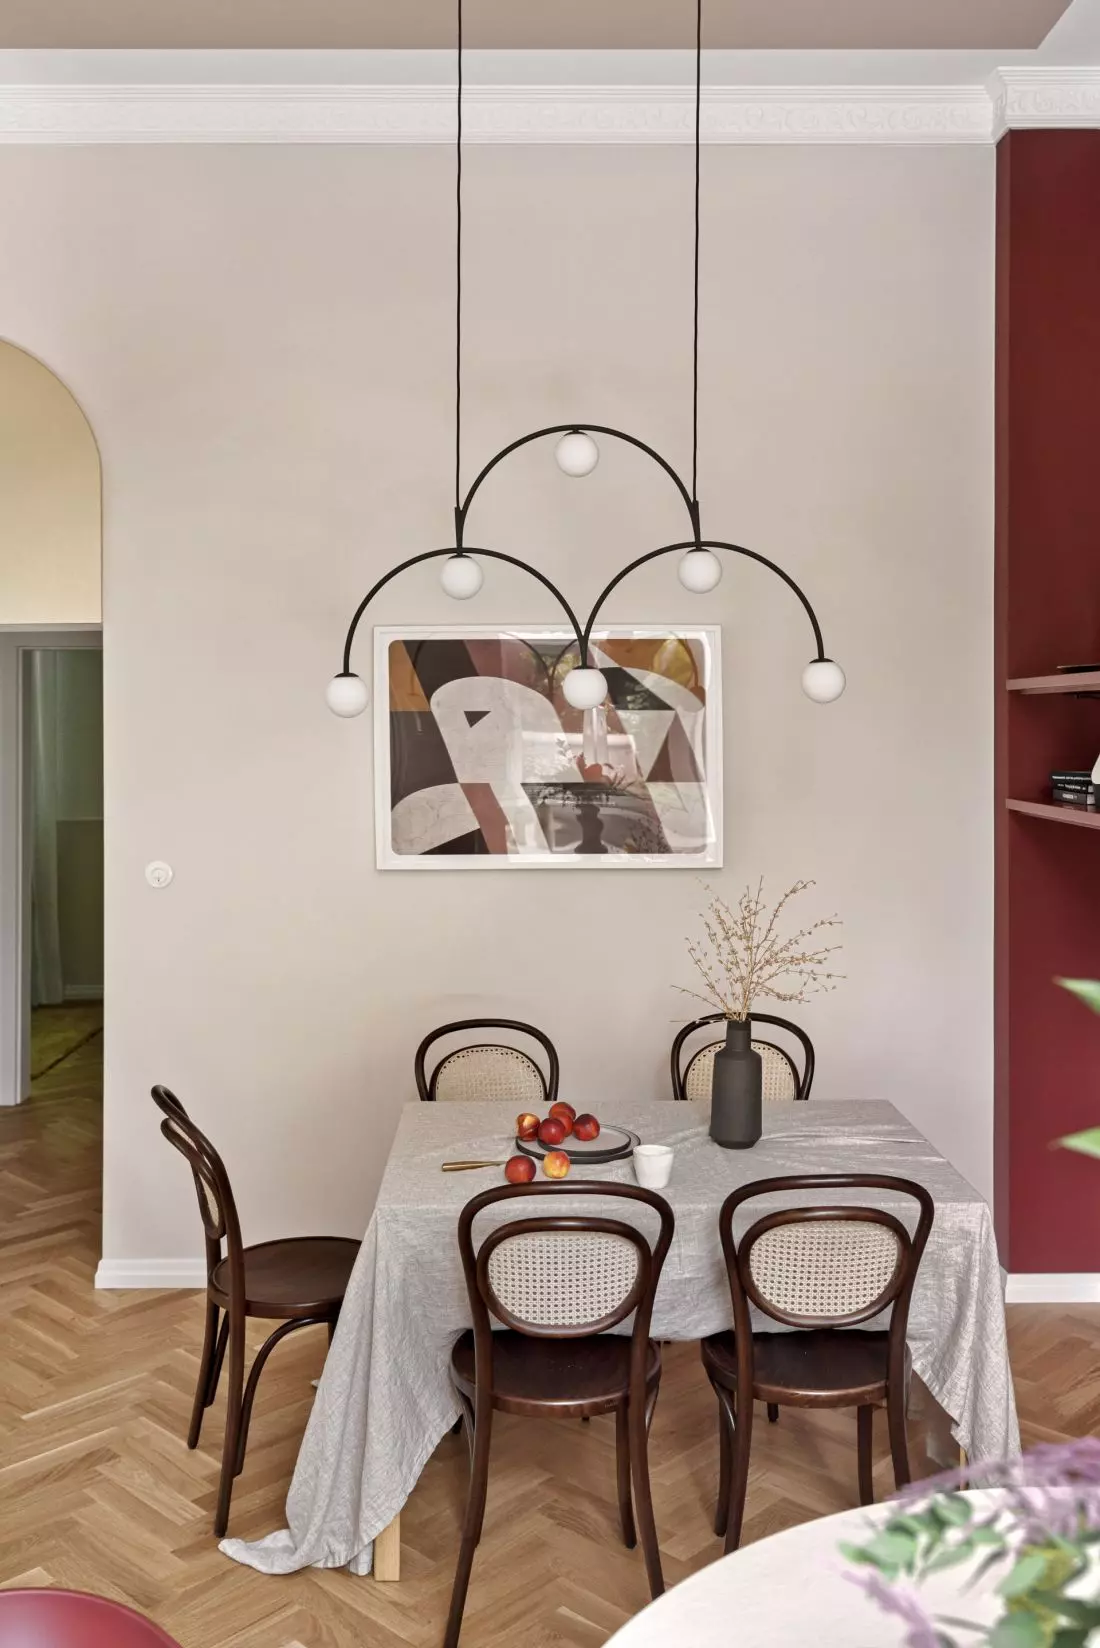 Lampe décorative conçue par Monika Mulder pour la marque Pholc accrochée dans la salle à manger